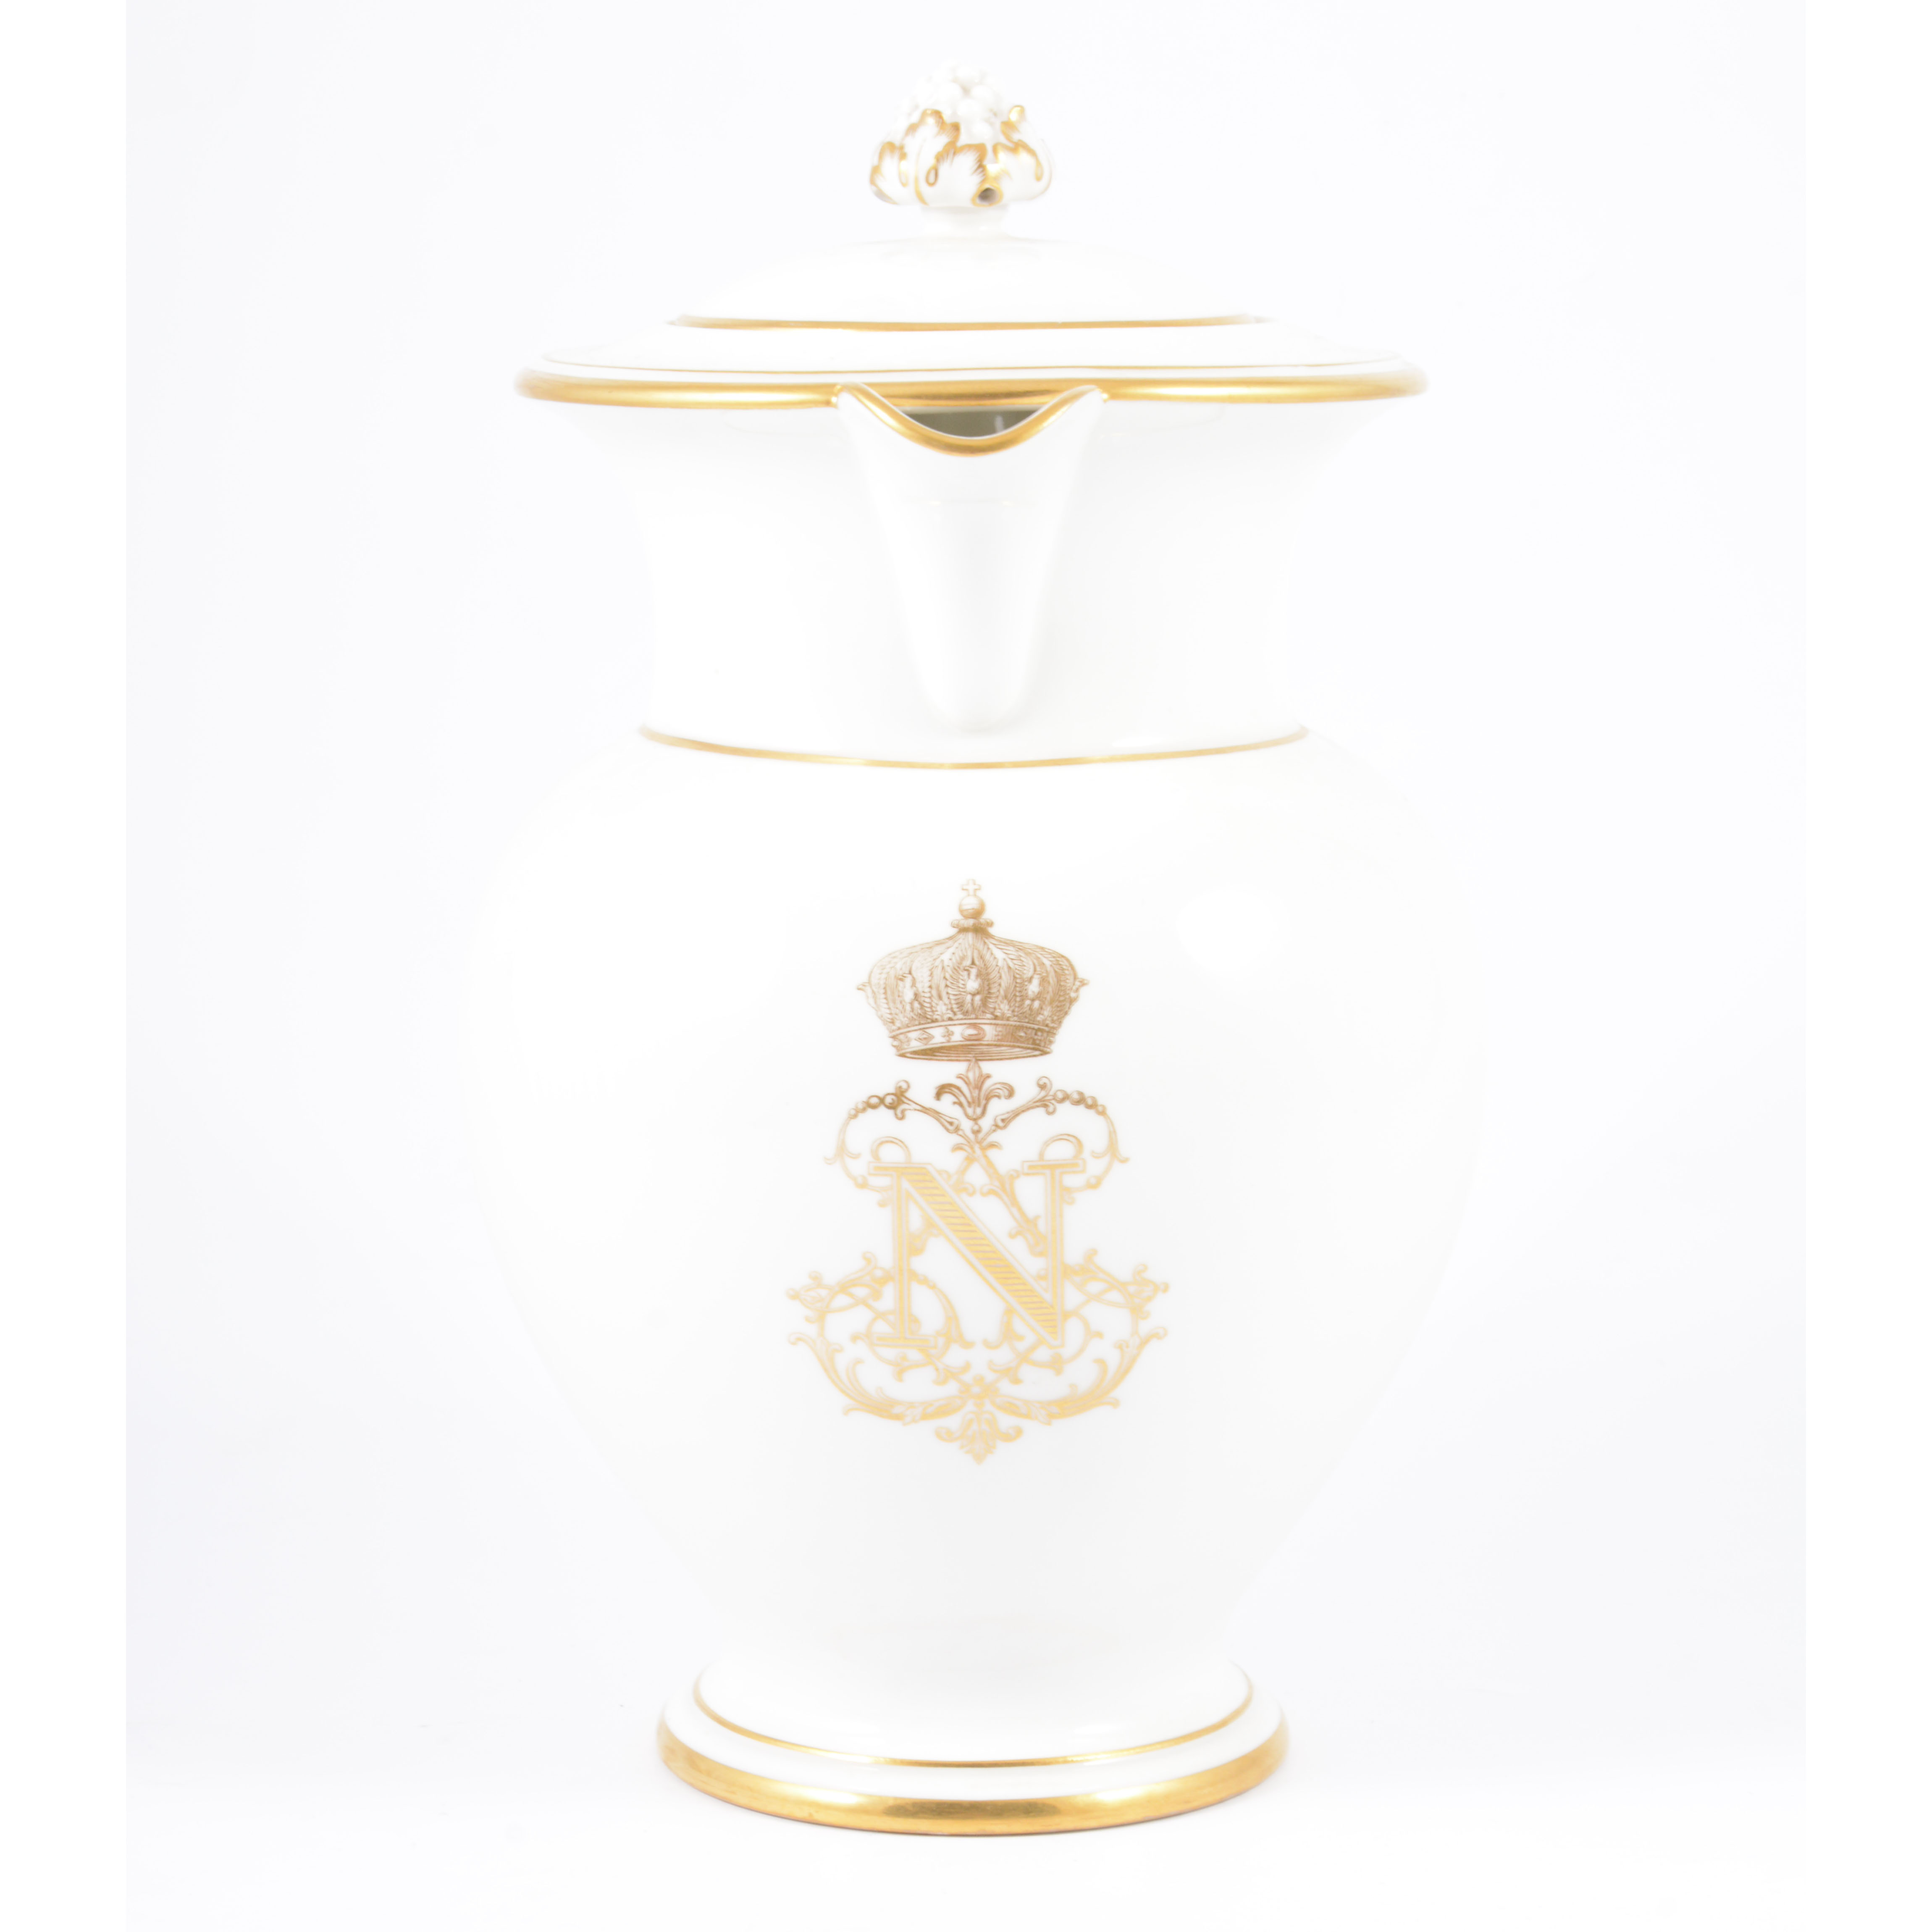 Sevres style Napoleonic jug, gilt decoration, 24cm. - Image 2 of 2